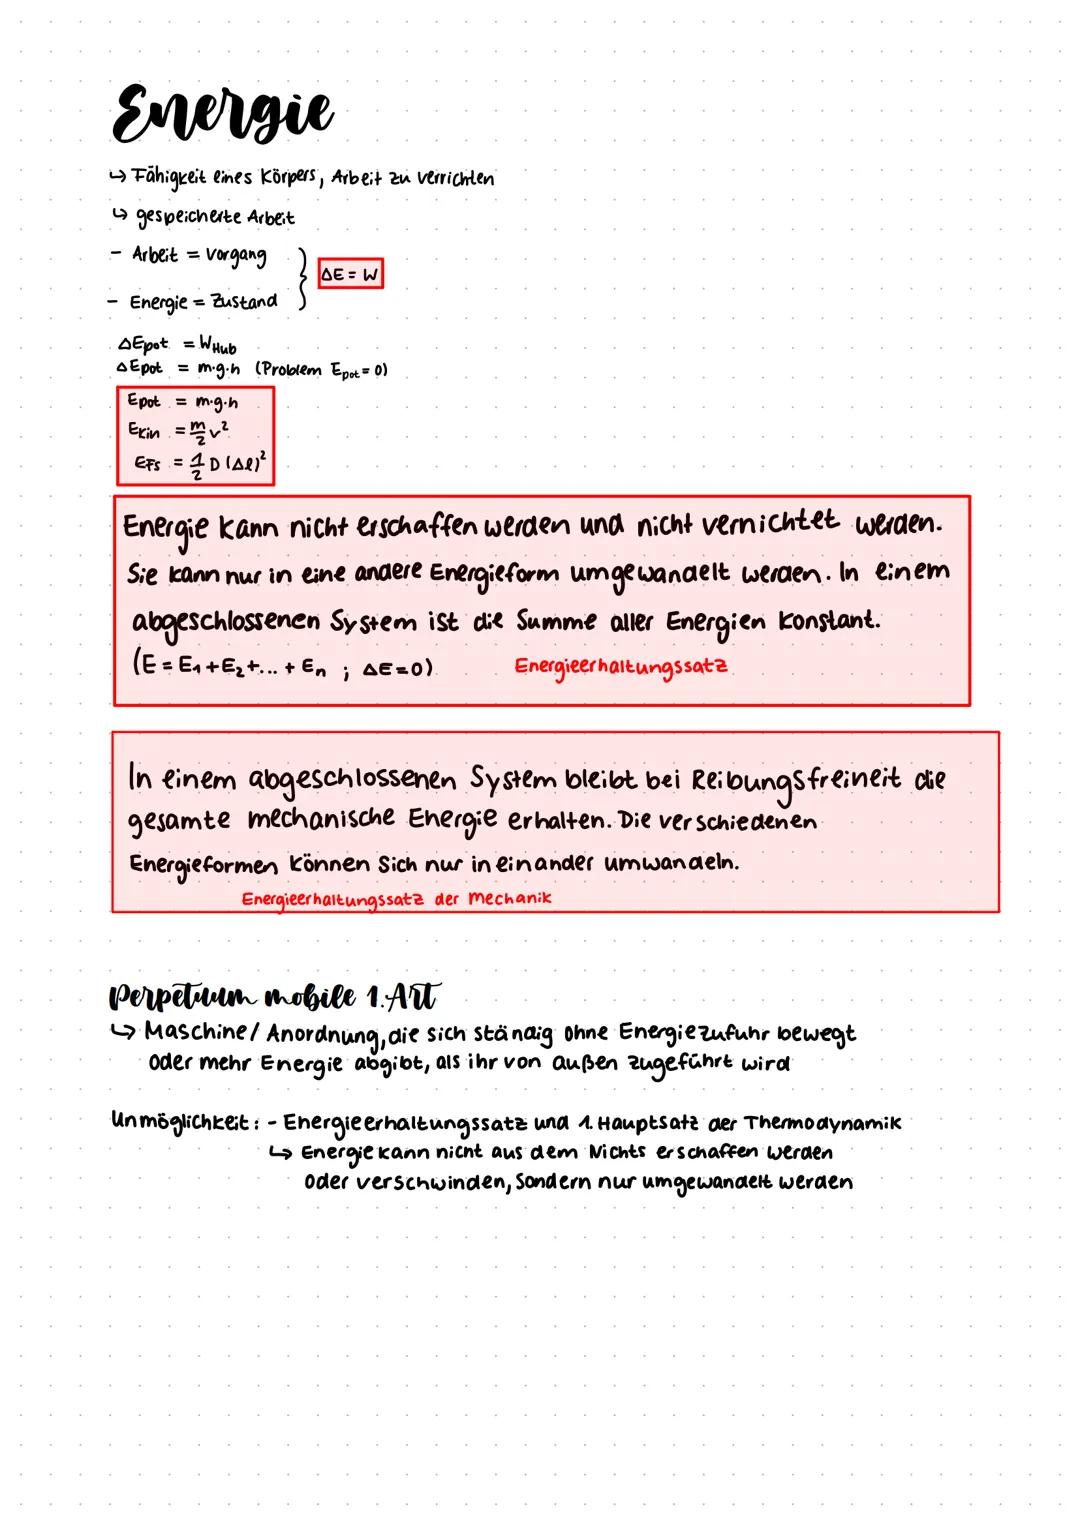 
<h2 id="physikabitur2009sachsenanhaltlsungen">Physik Abitur 2009 Sachsen-Anhalt Lösungen</h2>
<p>Bei der Kinematik der Punktmasse handelt e